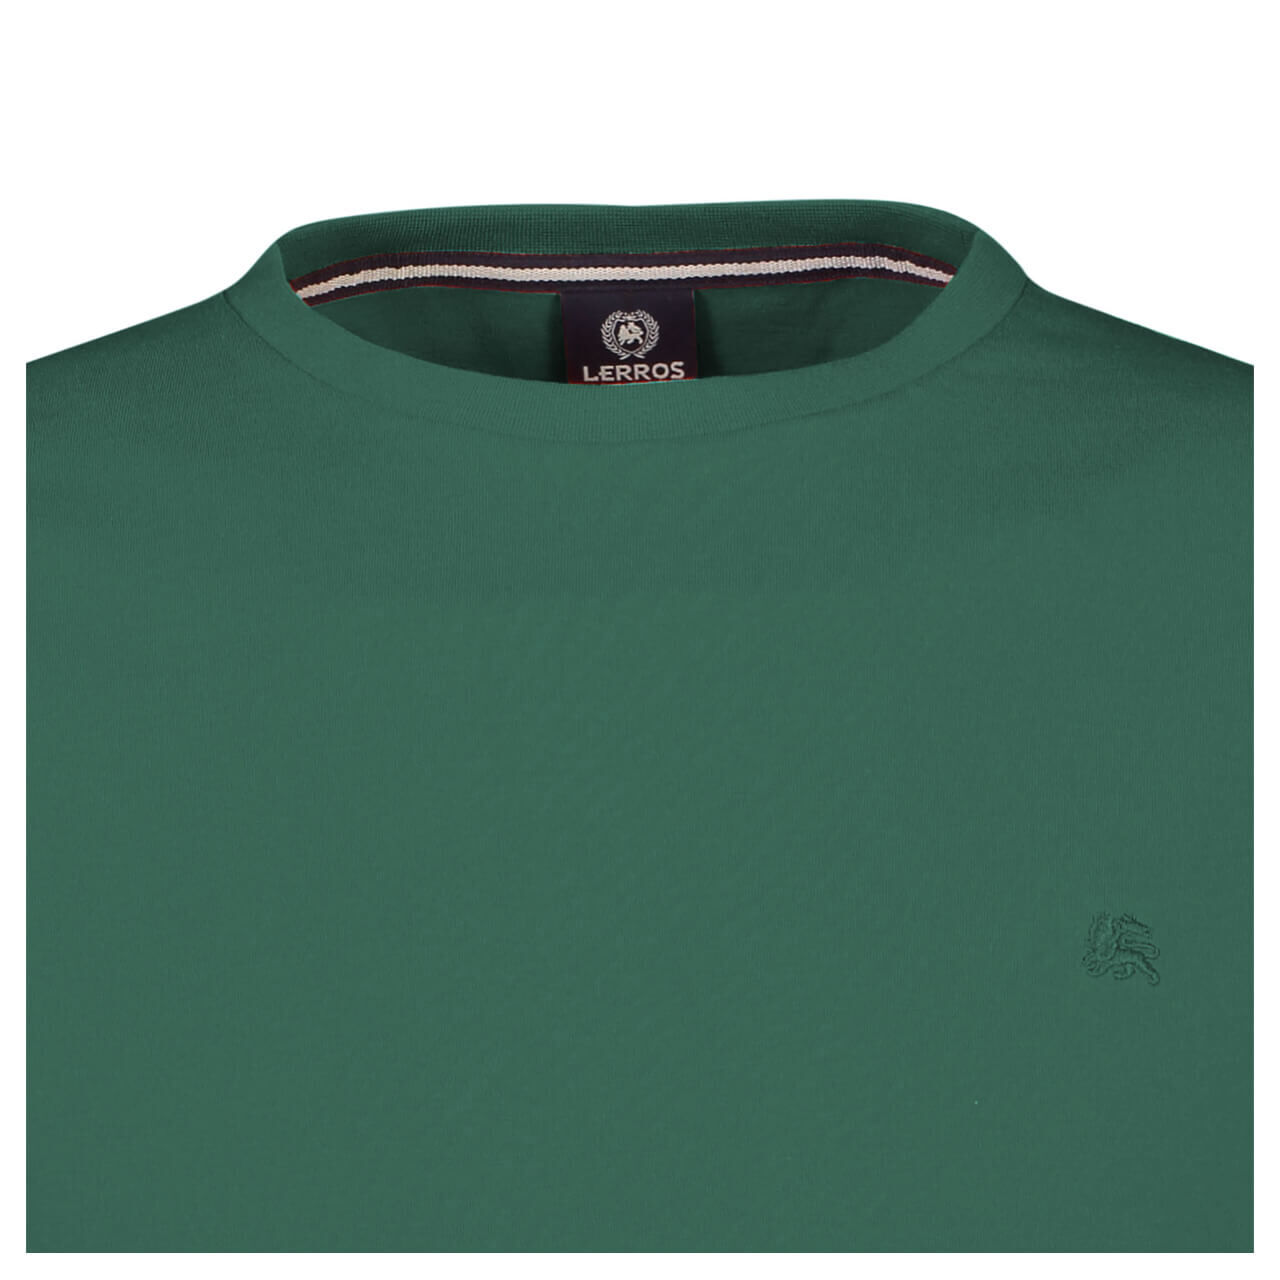 Lerros T-Shirt für Herren in Grün, FarbNr.: 654